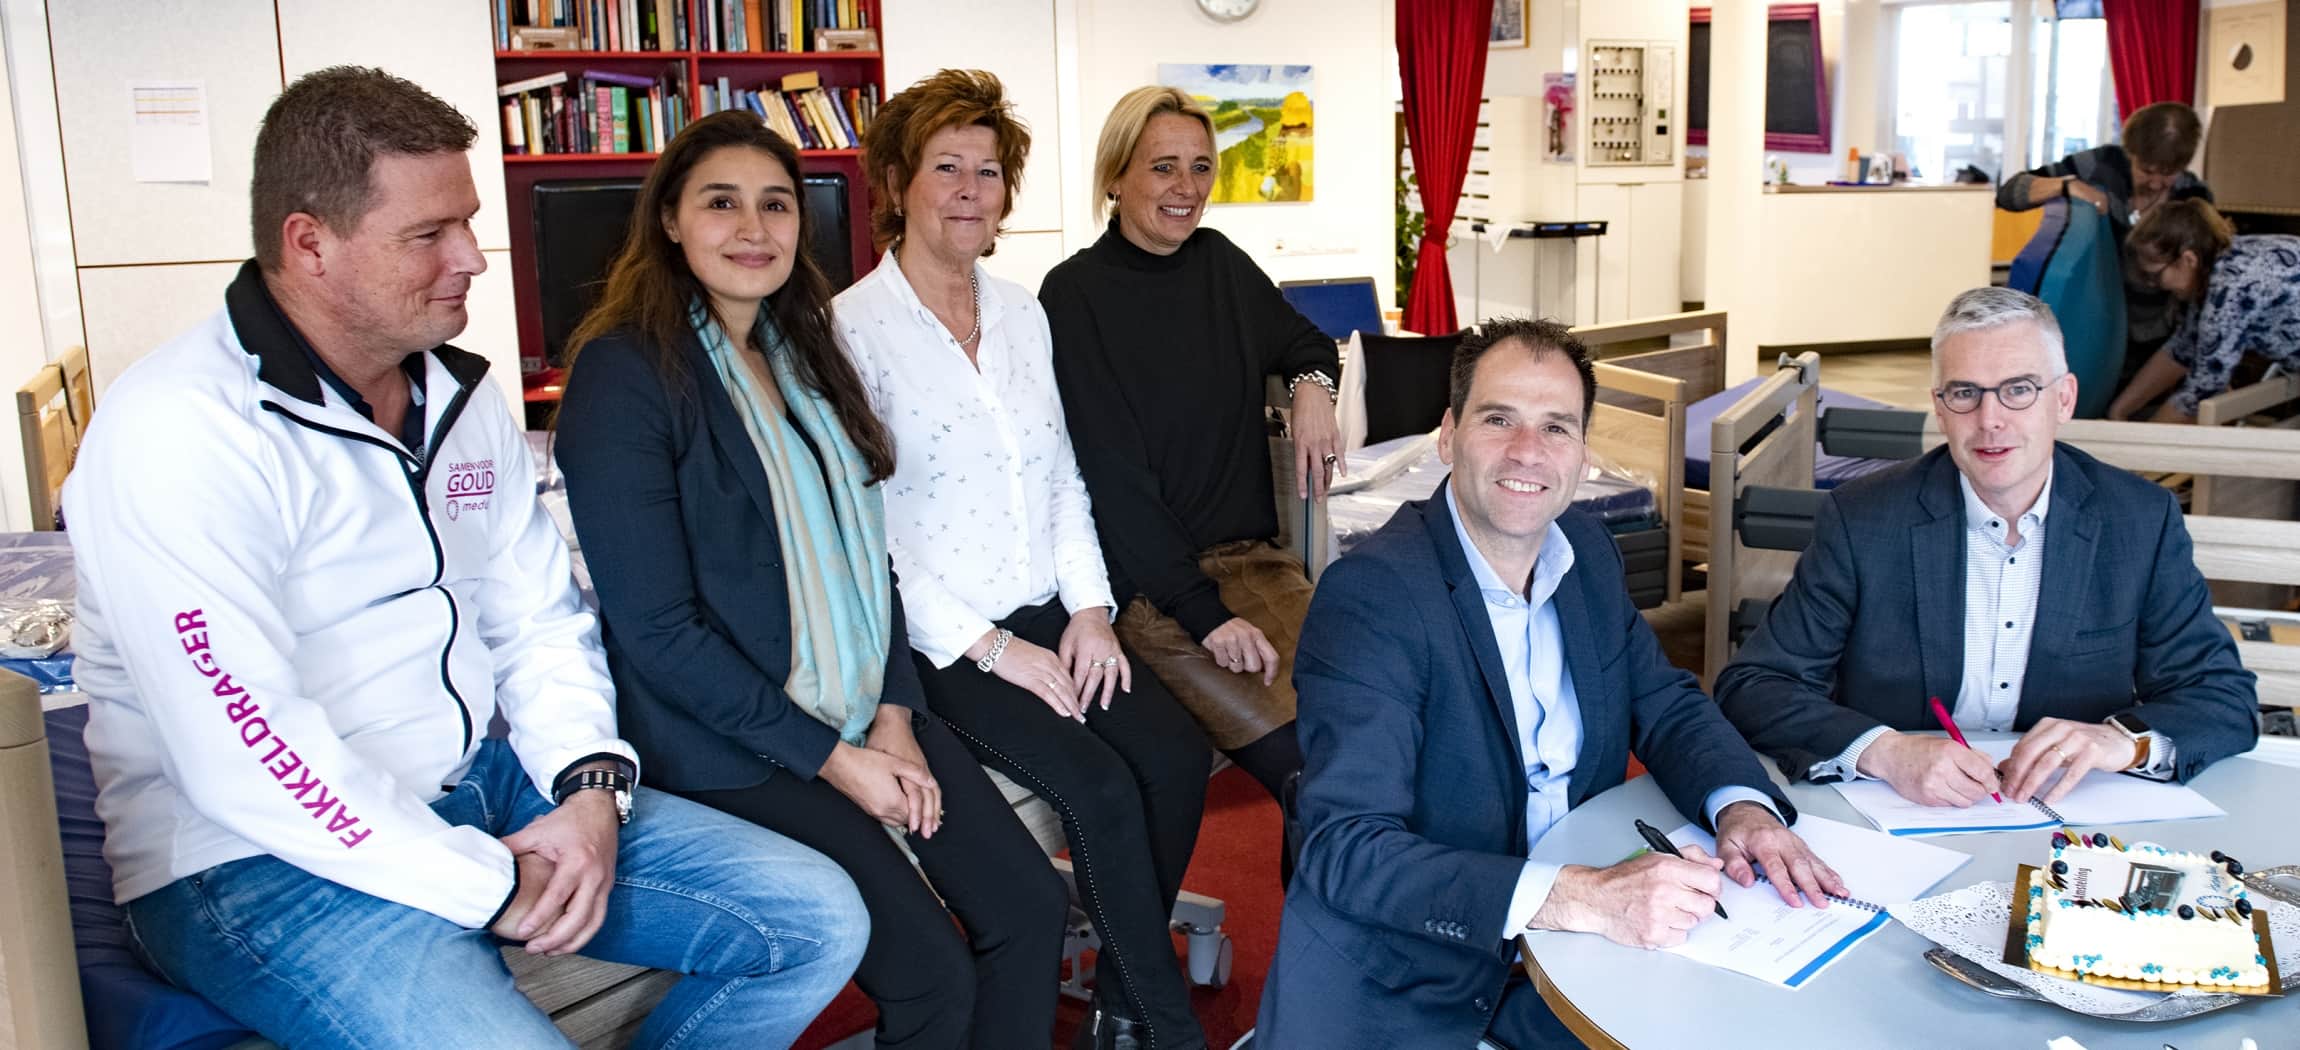 Ondertekening samenwerking Harting-Bank voor 1.400 nieuwe bedden in verpleeghuizen Amstelring